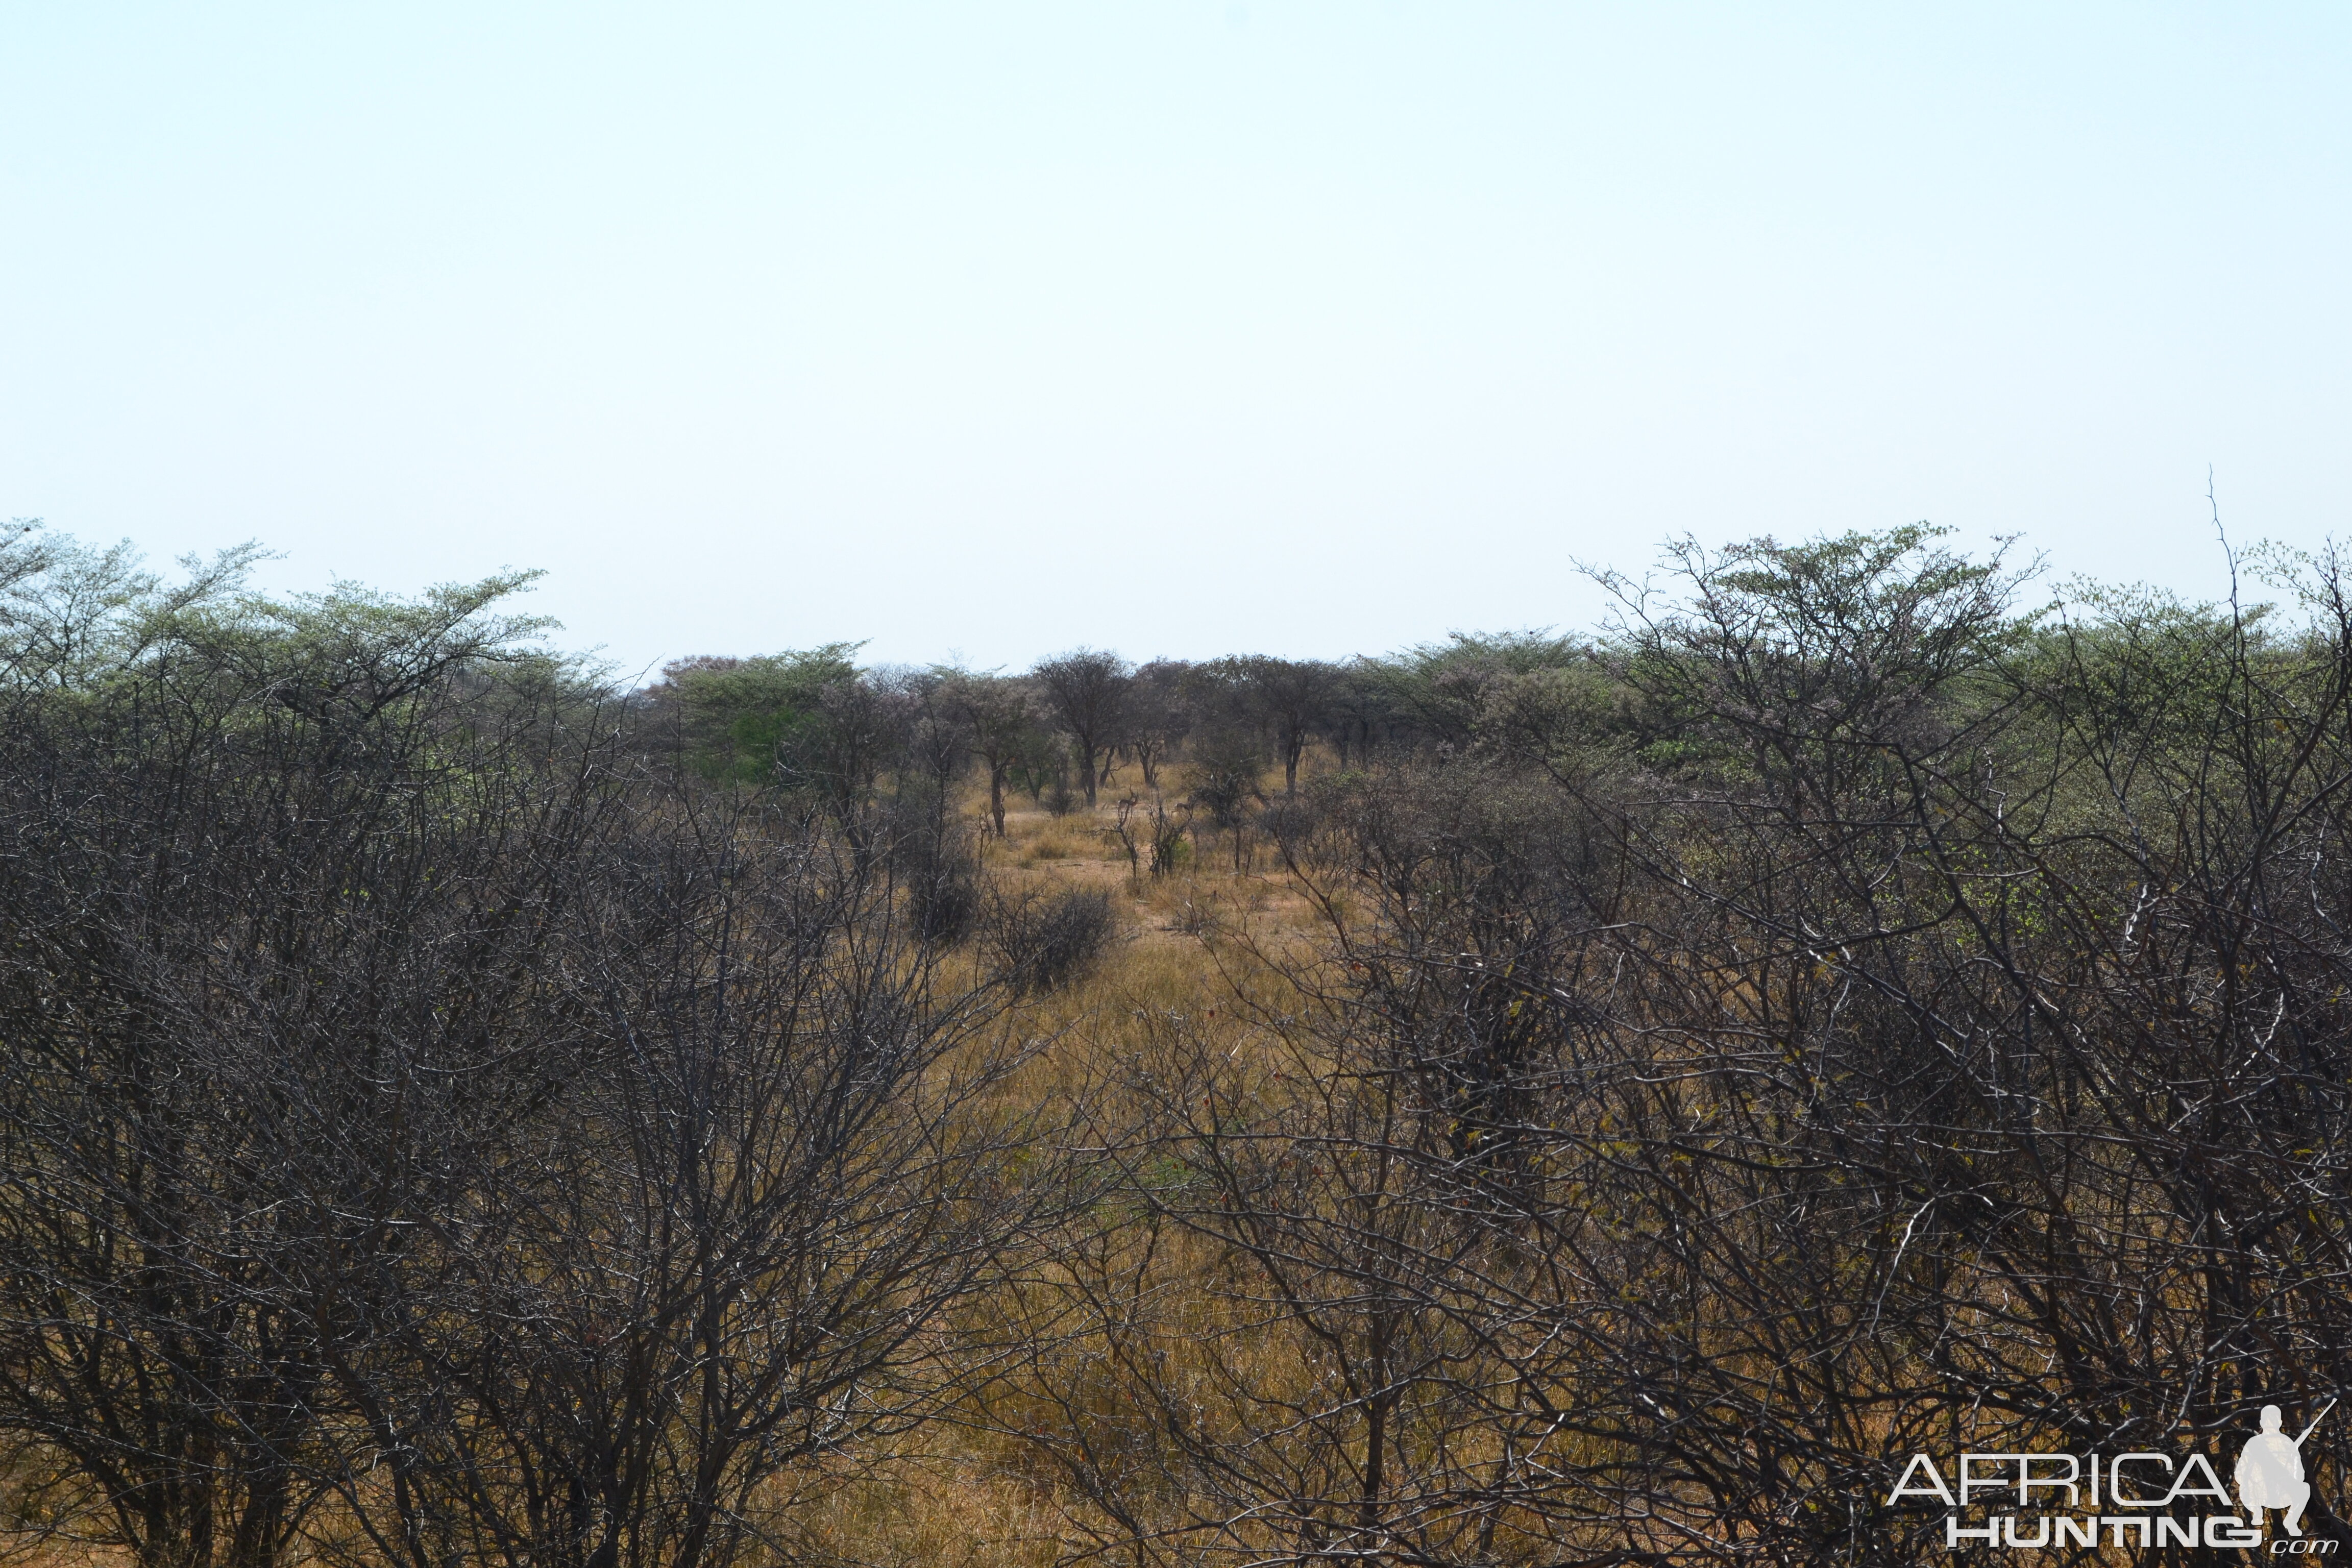 Springbok and Impala through the bush